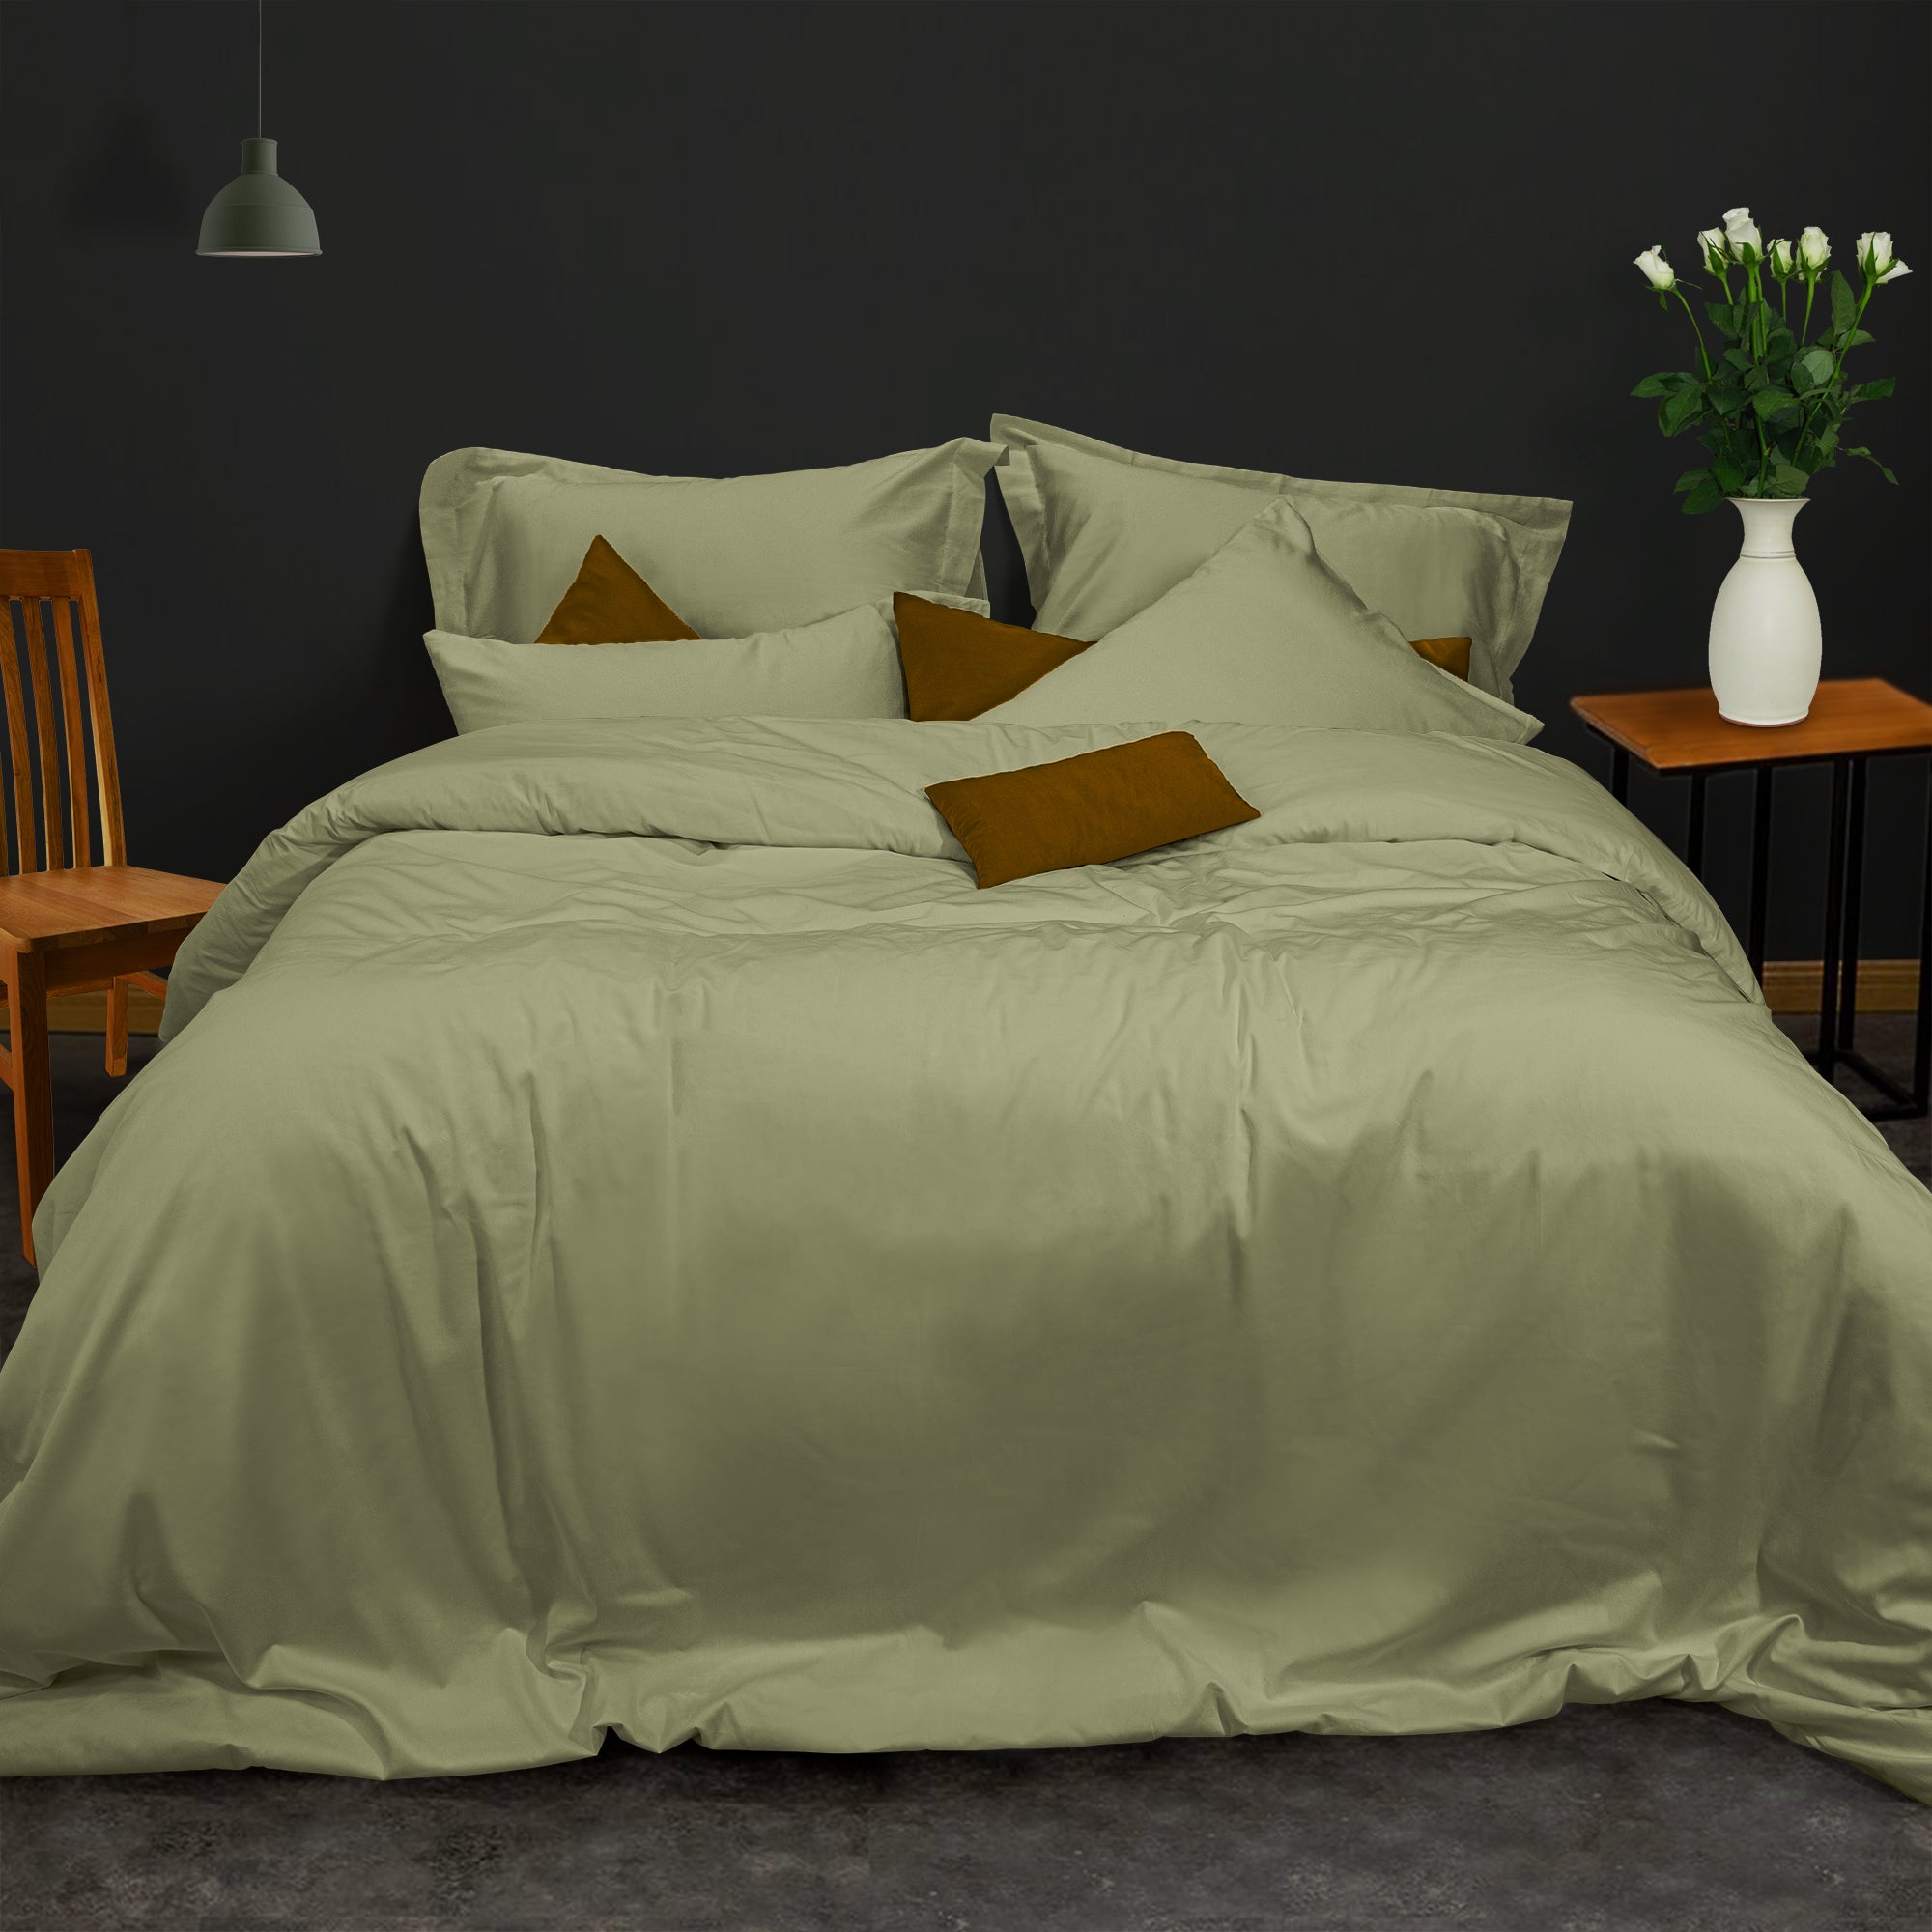 Sage Green Bedding Sets for the Modern Bedroom